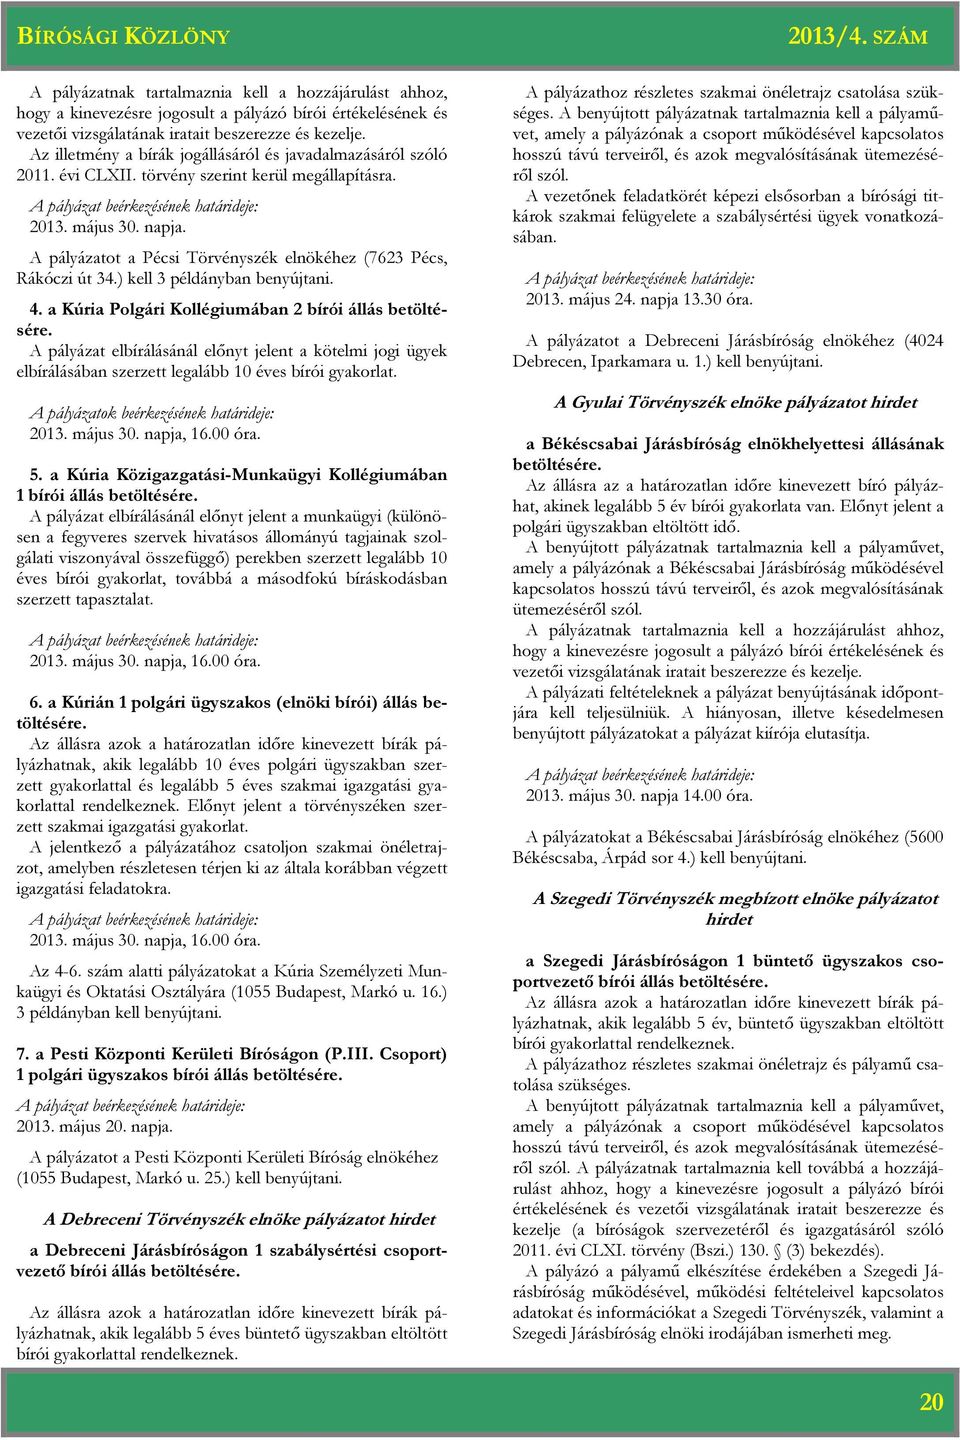 A pályázatot a Pécsi Törvényszék elnökéhez (7623 Pécs, Rákóczi út 34.) kell 3 példányban benyújtani. 4. a Kúria Polgári Kollégiumában 2 bírói állás betöltésére.